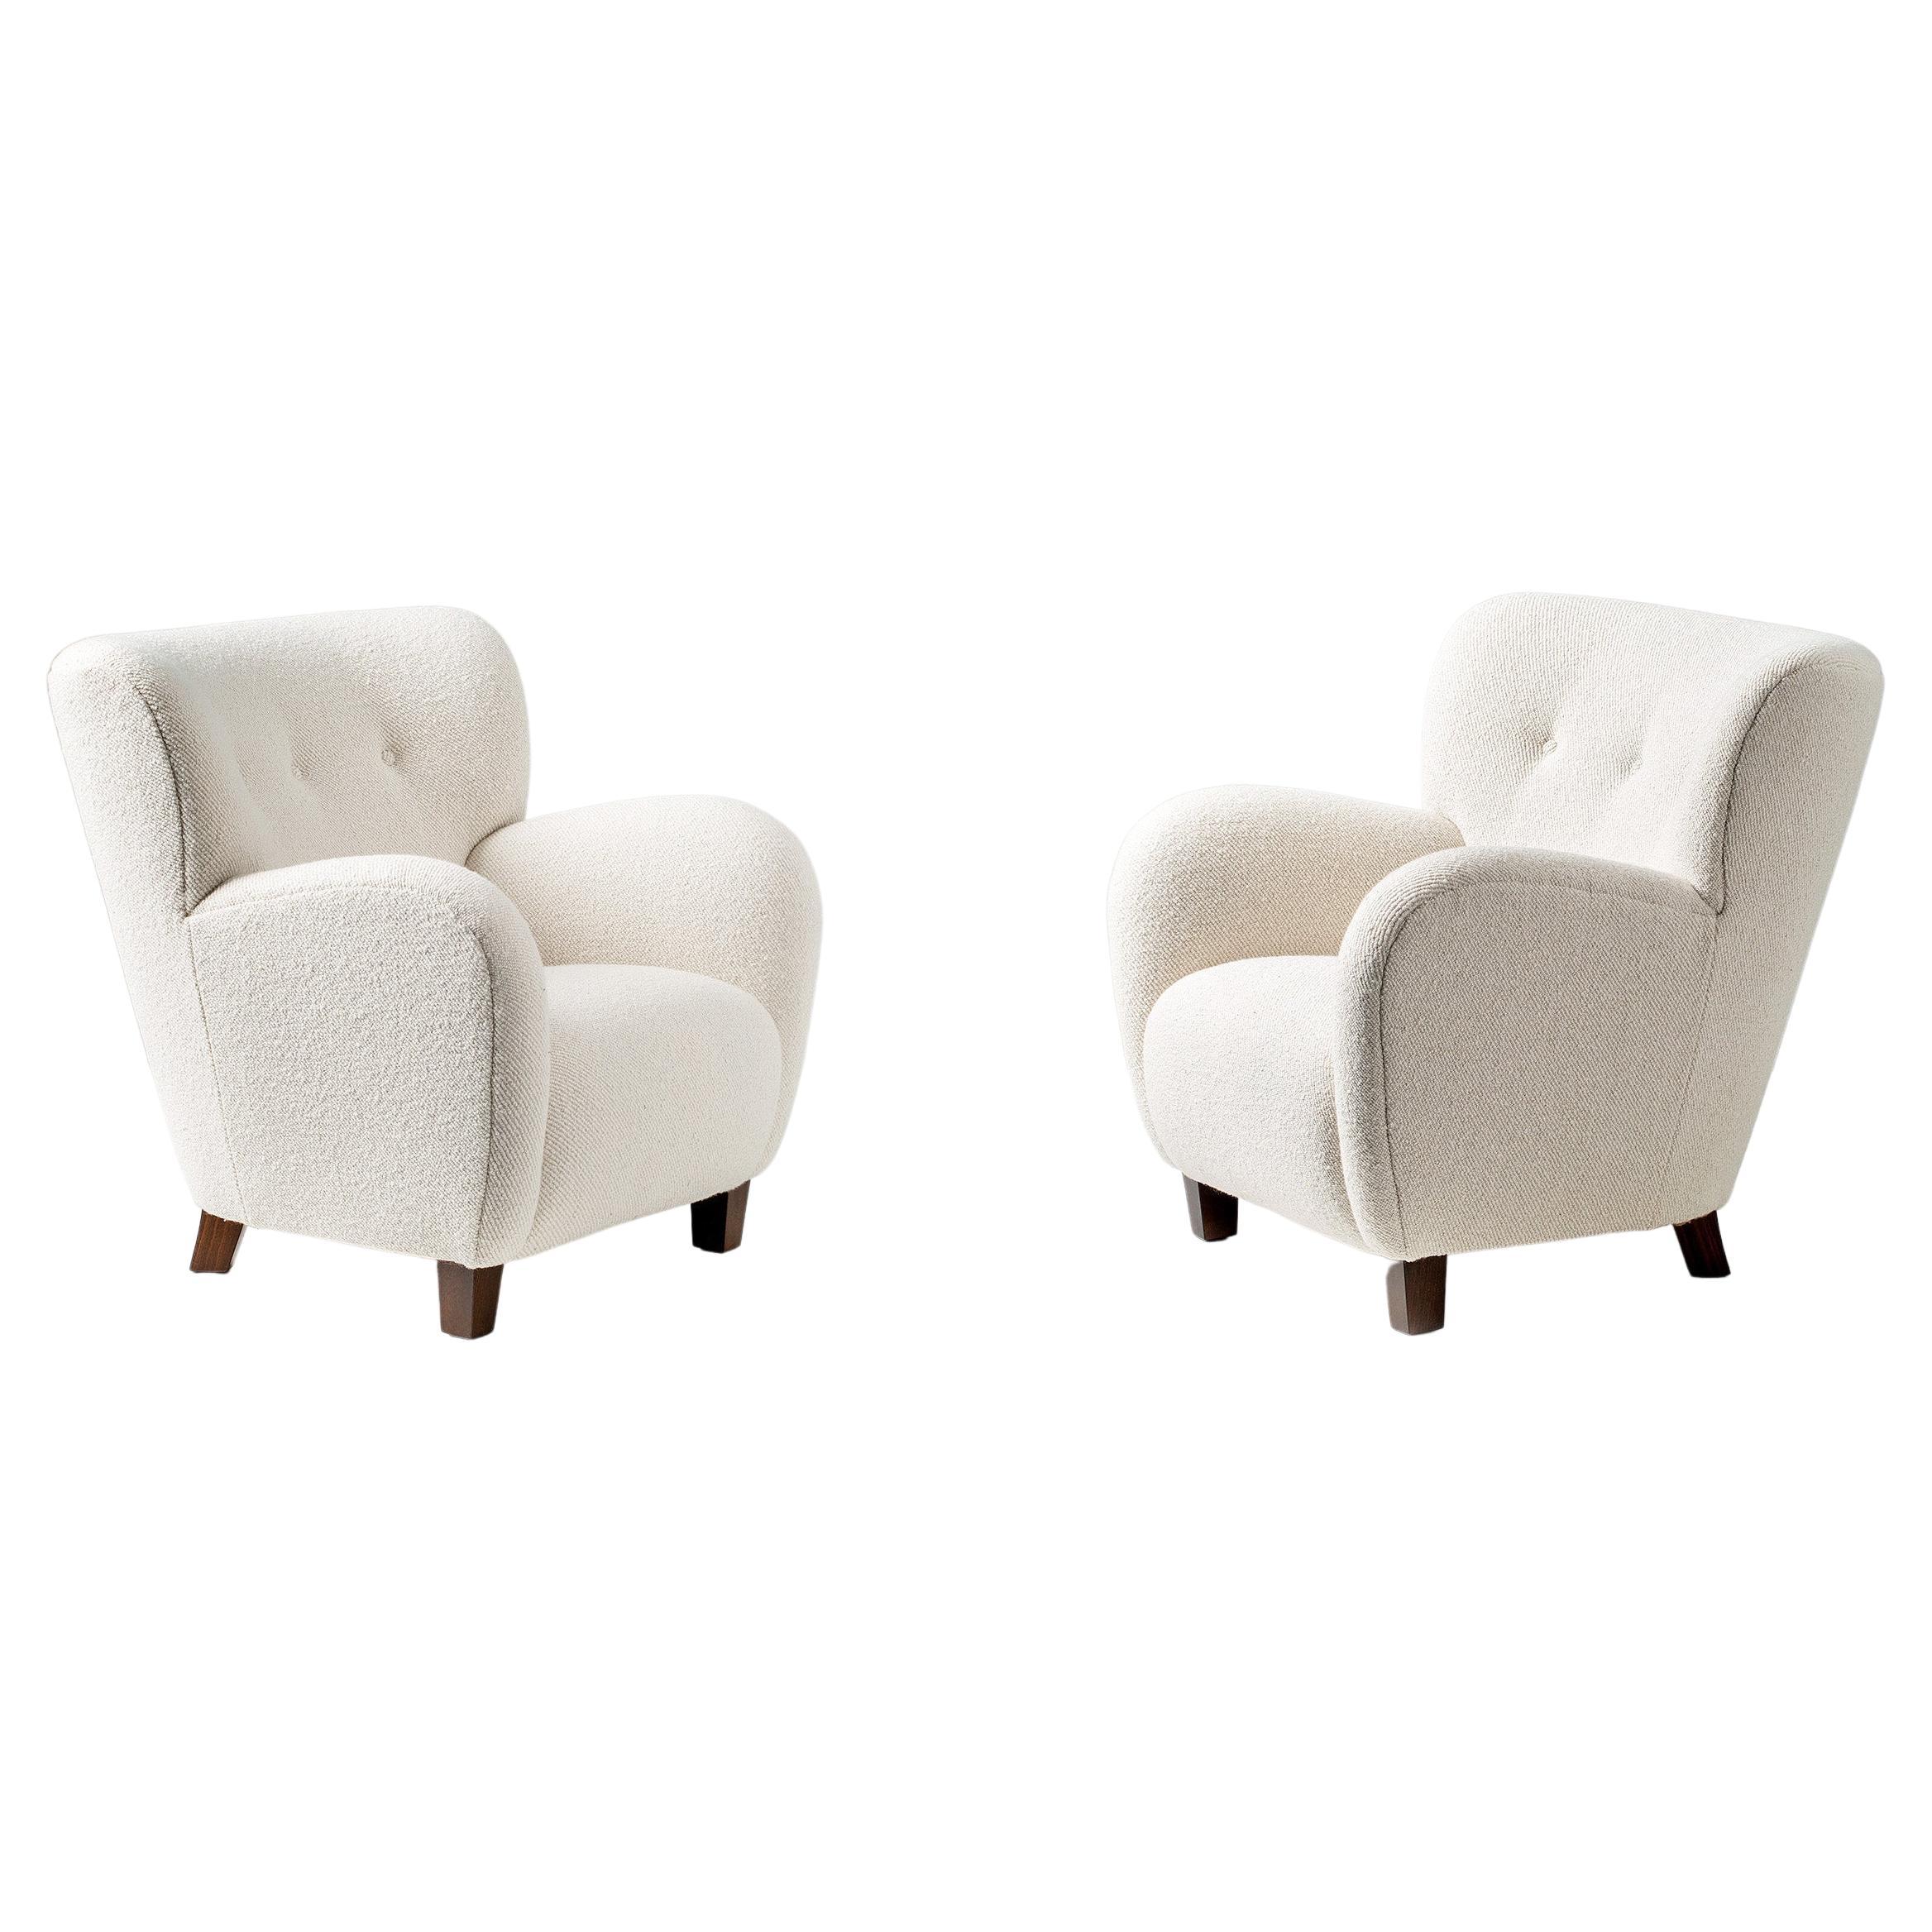 Dagmar Design - Chaise longue Karu.

Ces chaises longues haut de gamme sont fabriquées à la main sur commande dans nos ateliers au Royaume-Uni. Les pieds de la chaise sont disponibles en chêne ou en hêtre dans une gamme de finitions. Les cadres